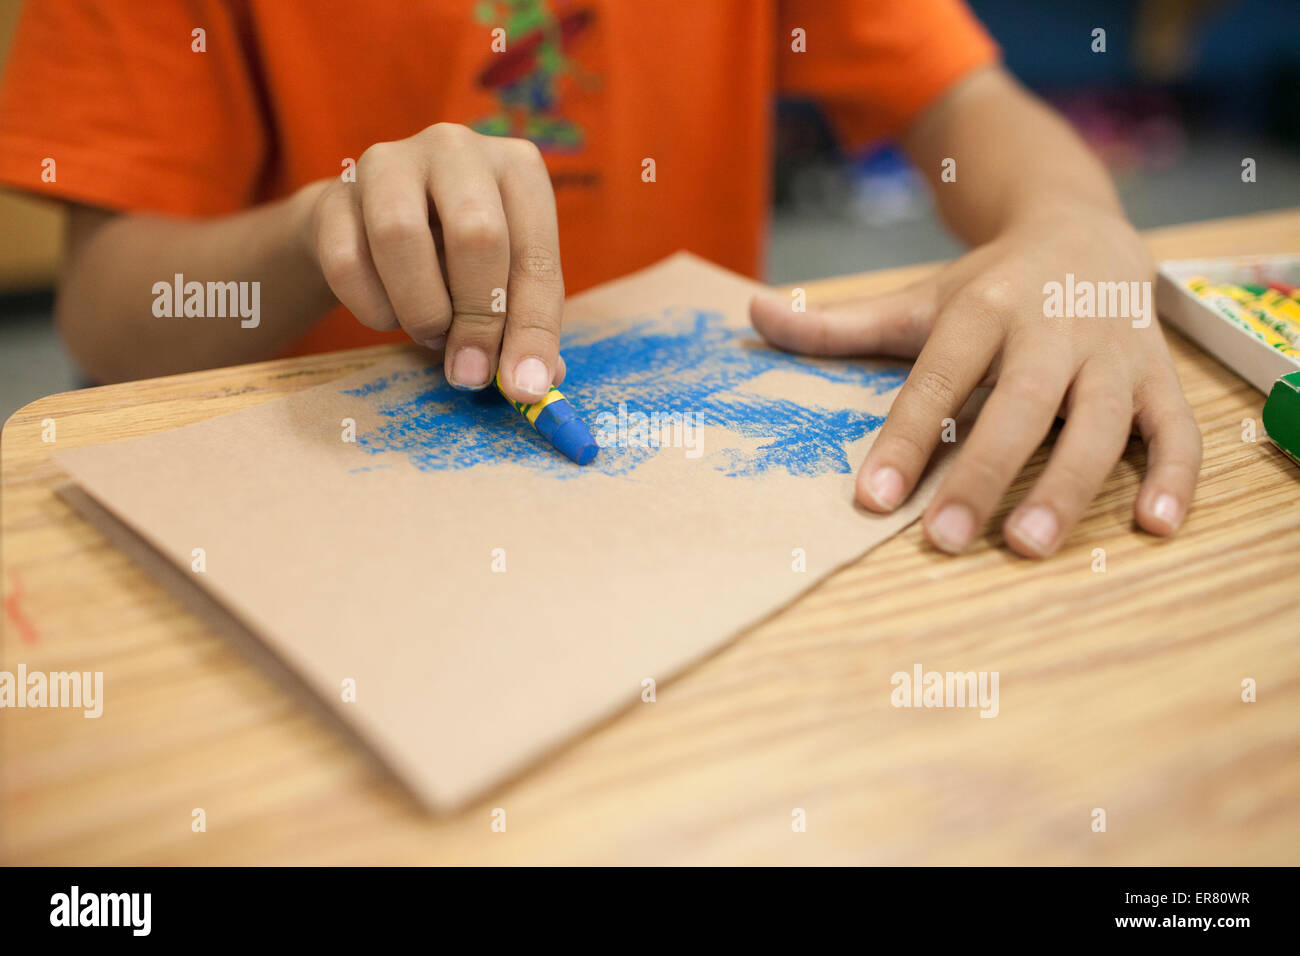 Un jeune garçon à l'aide d'un crayon de couleur bleu. Banque D'Images